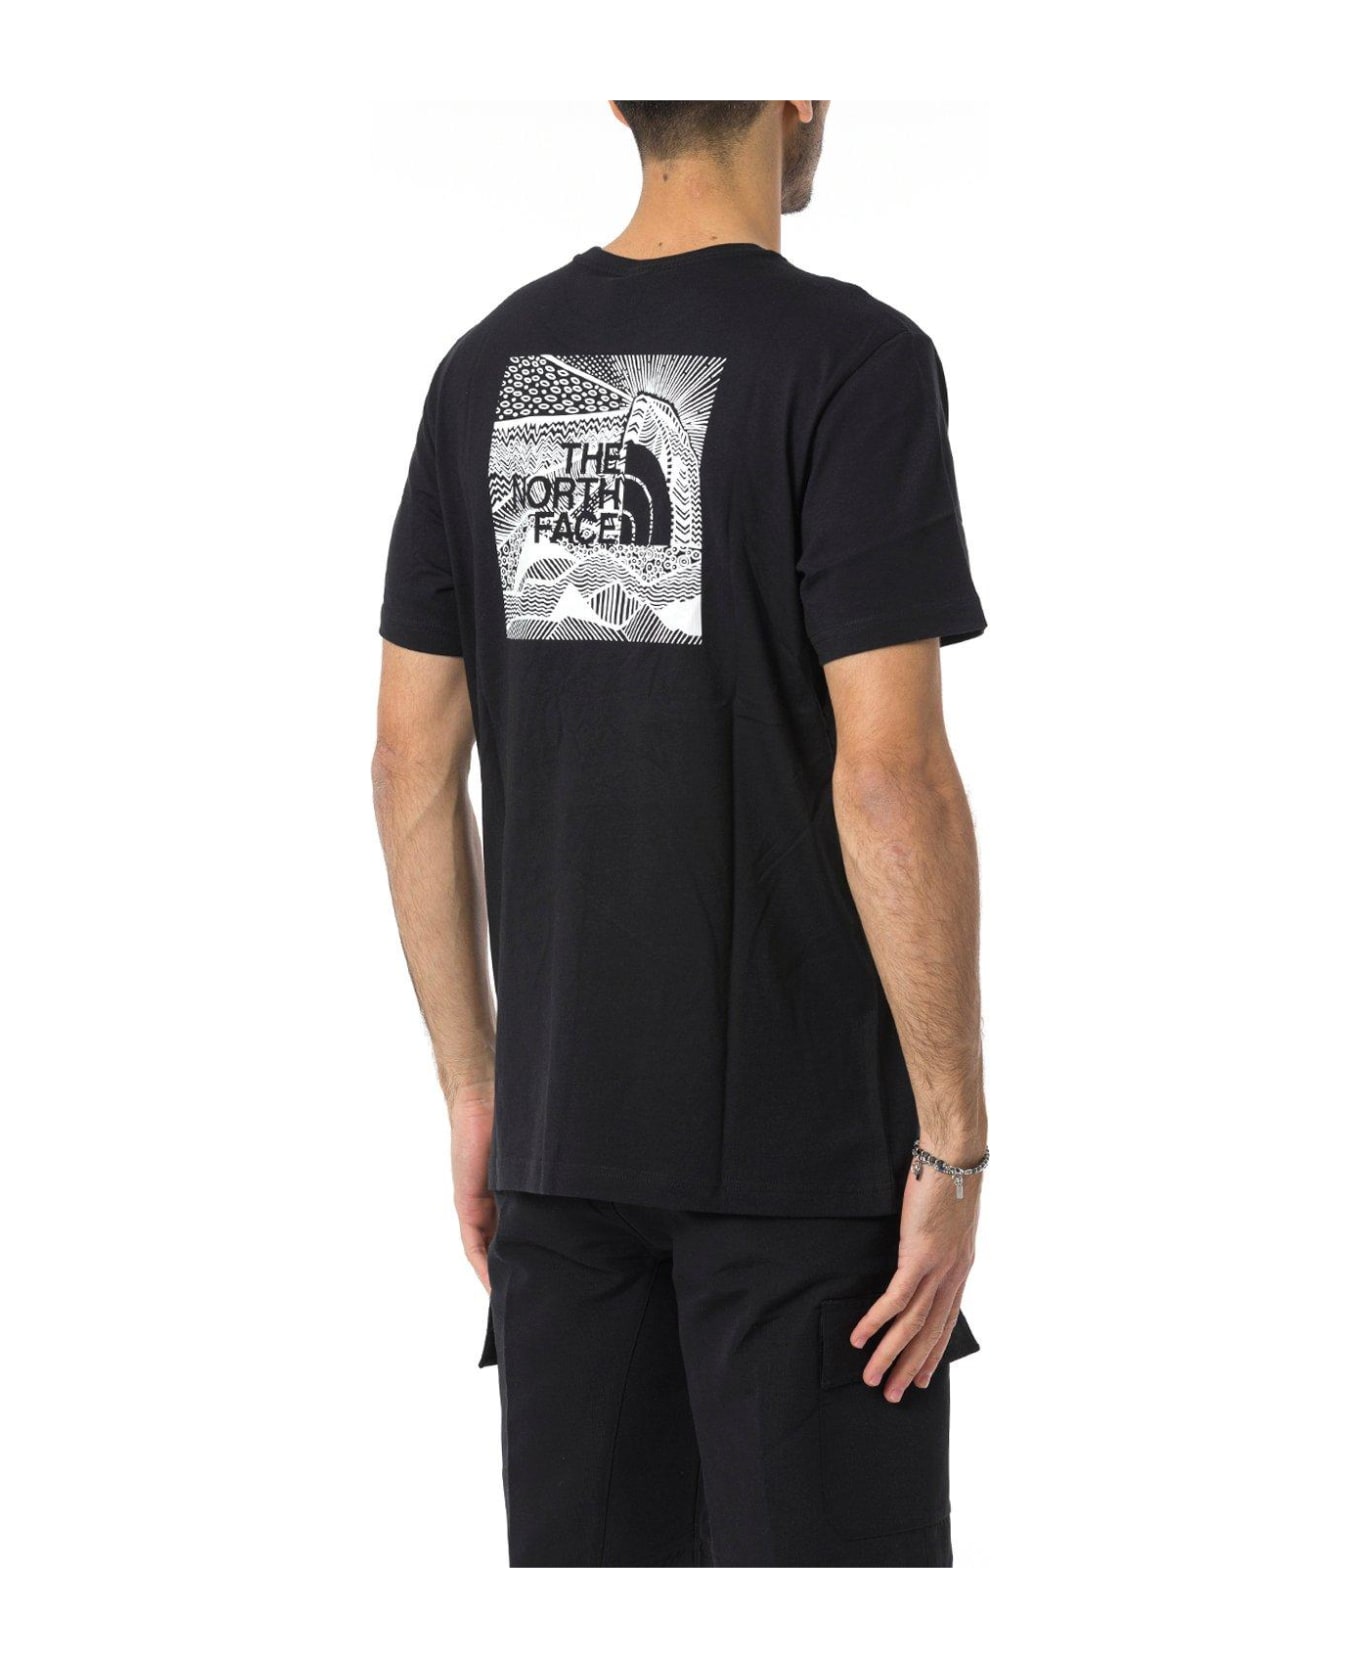 The North Face Logo Printed Crewneck T-shirt - Black シャツ